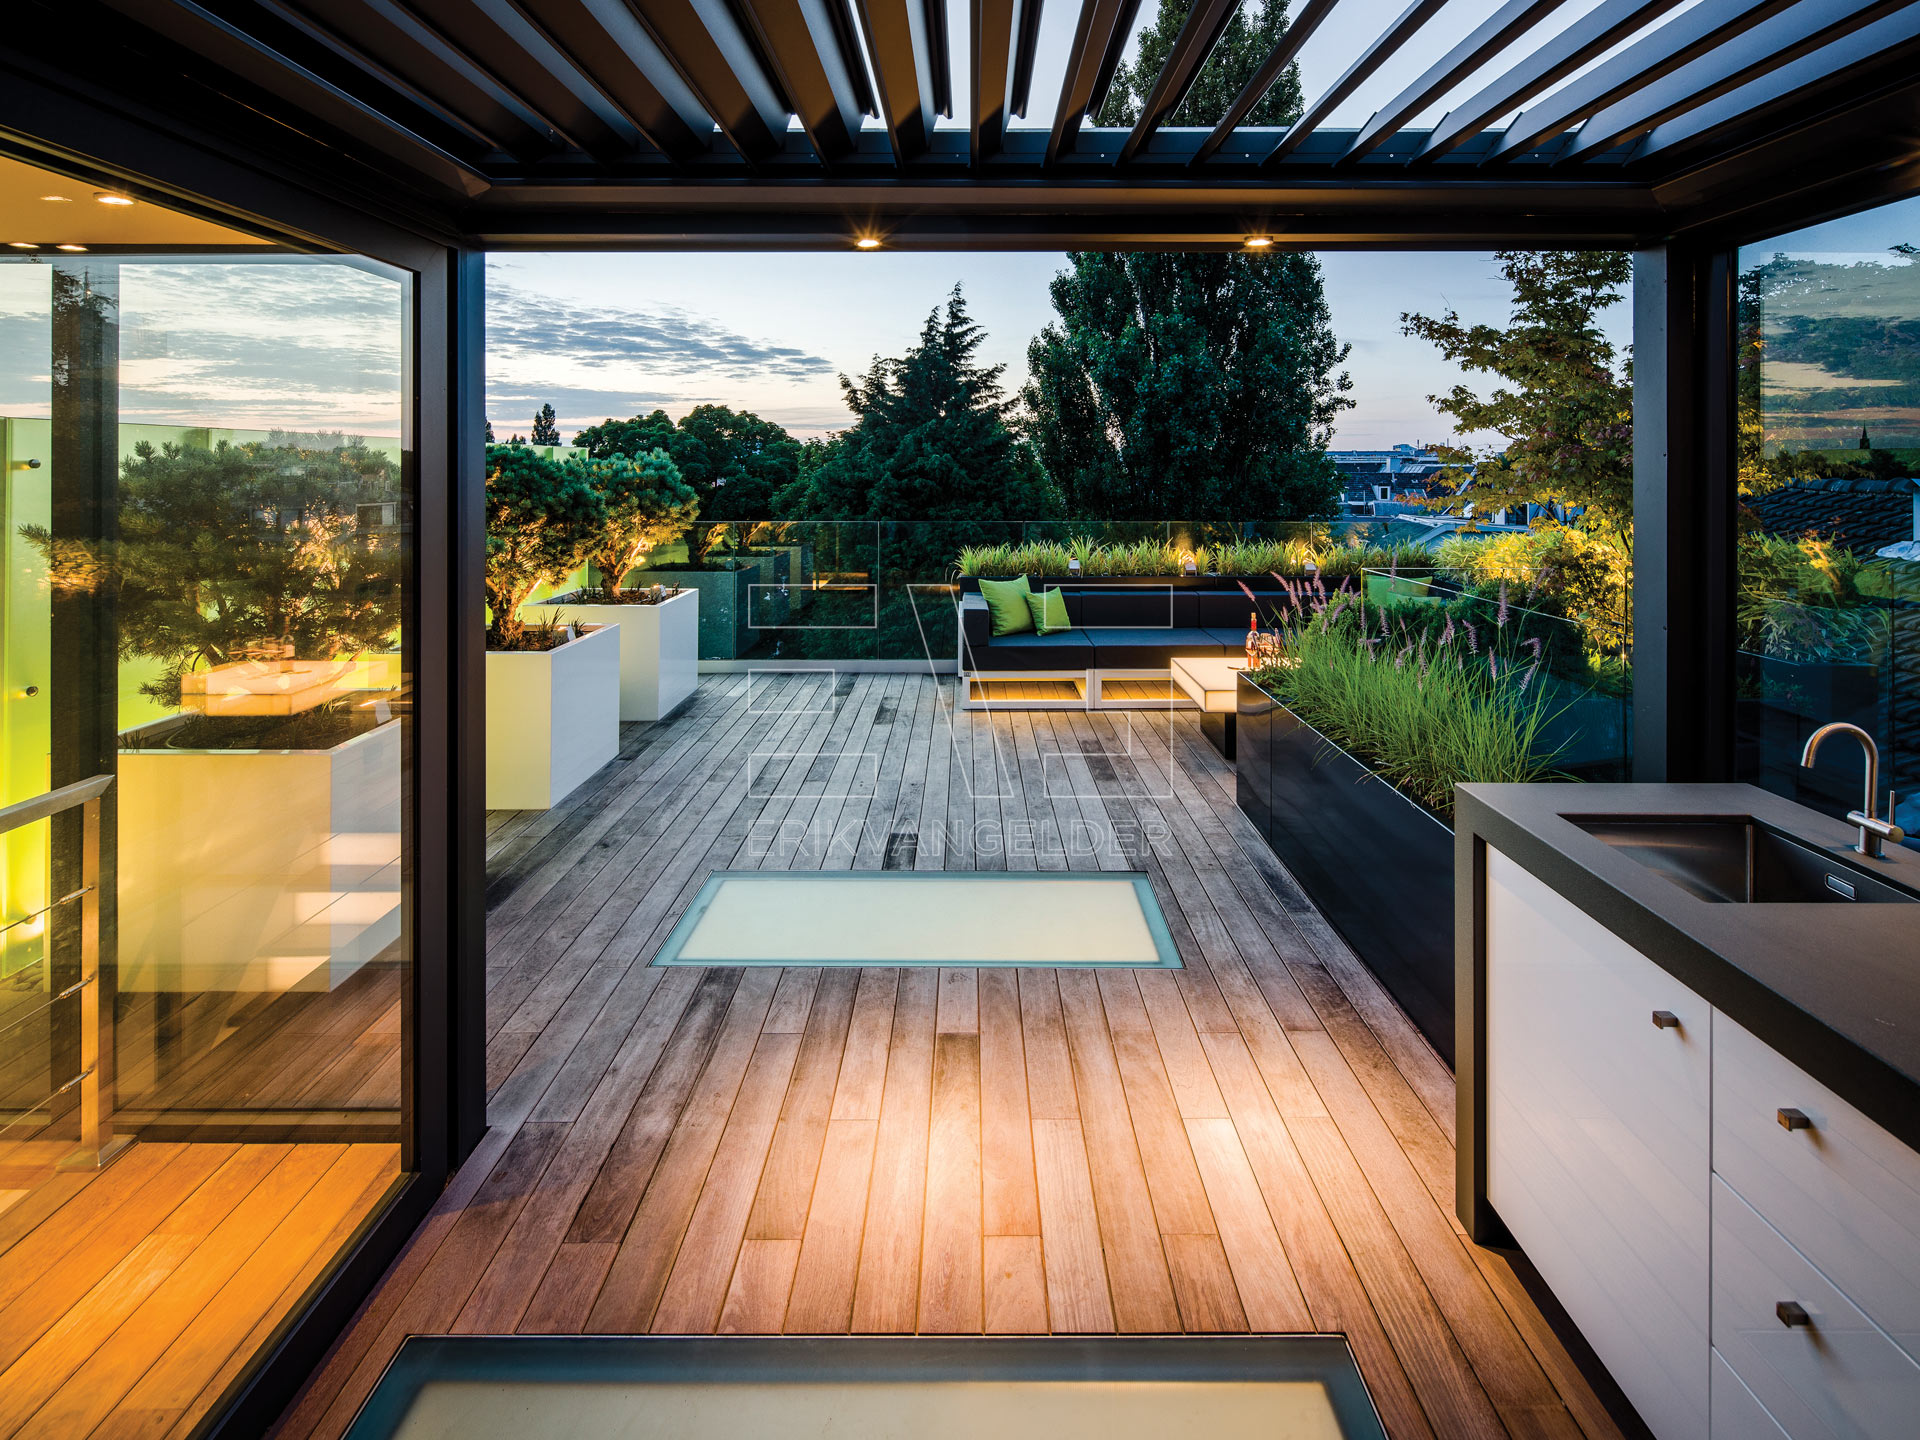 Luxe daktuin roof garden met moderne zwarte overkapping lamellendak buitenkeuken erikvangelder tuindesign exlusive garden sfeervol